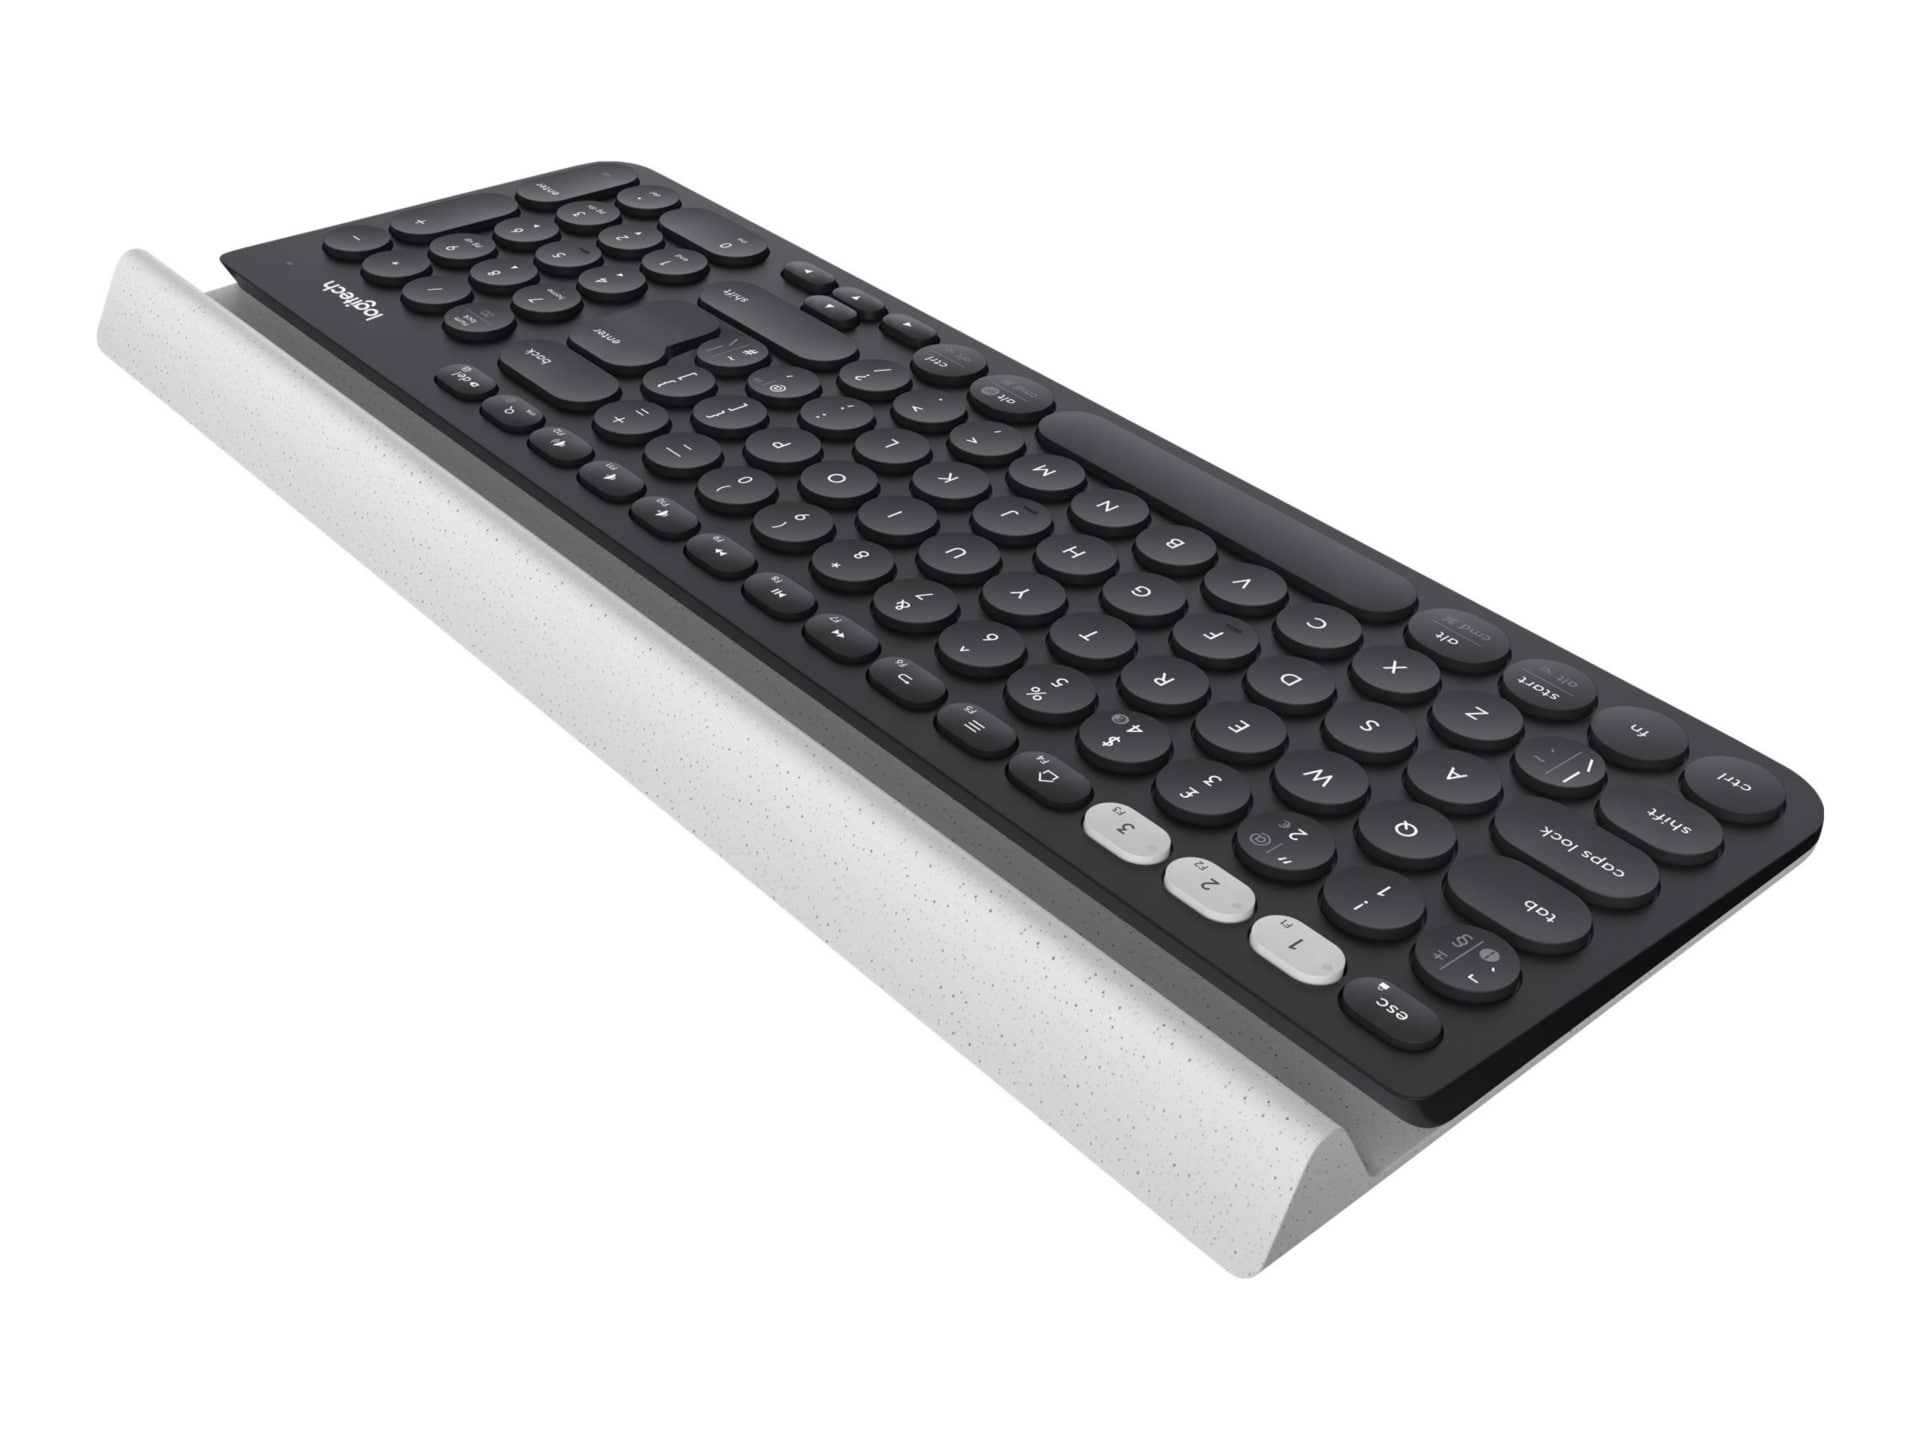 Logitech K780 Multi-Device - keyboard - - black 920-008149 - Keyboards -